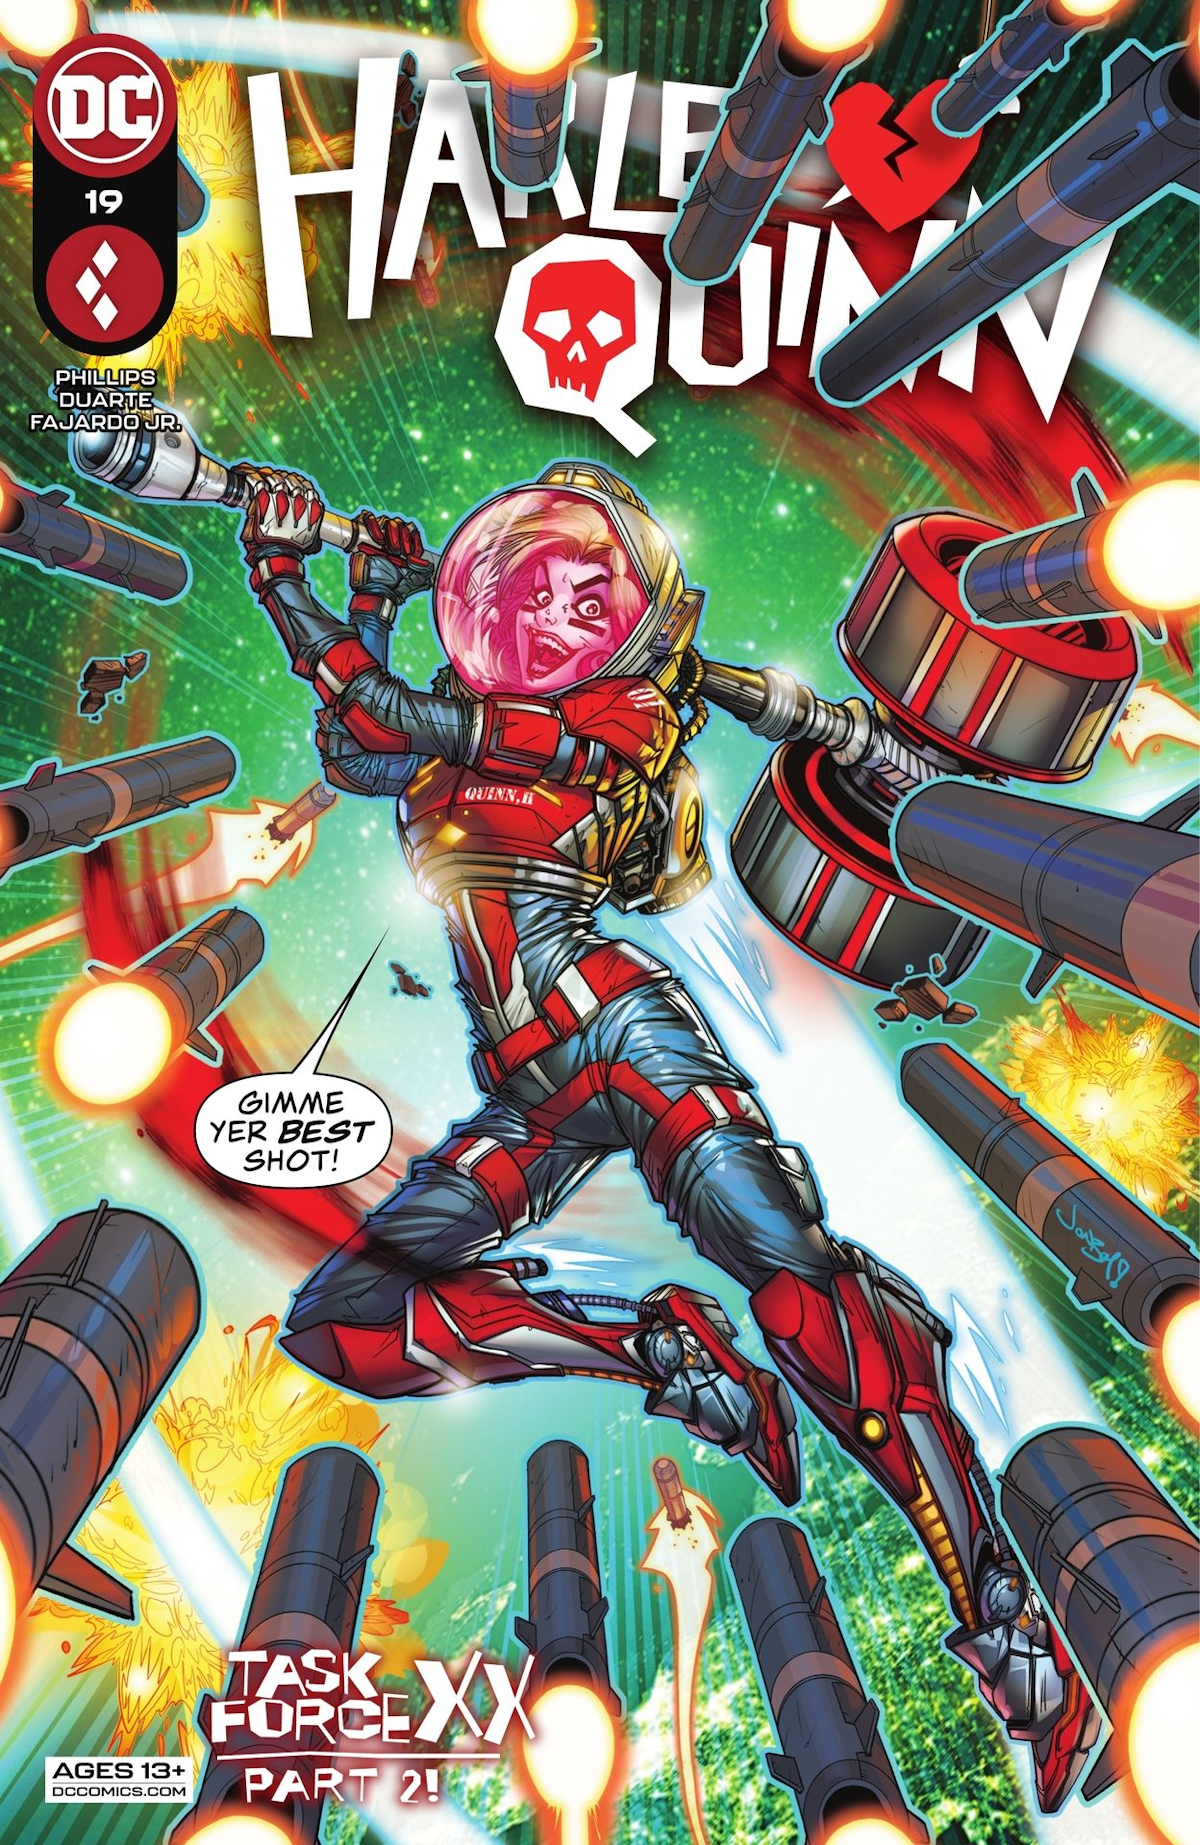 Harley Quinn Vol. 4 19 (Cover A)